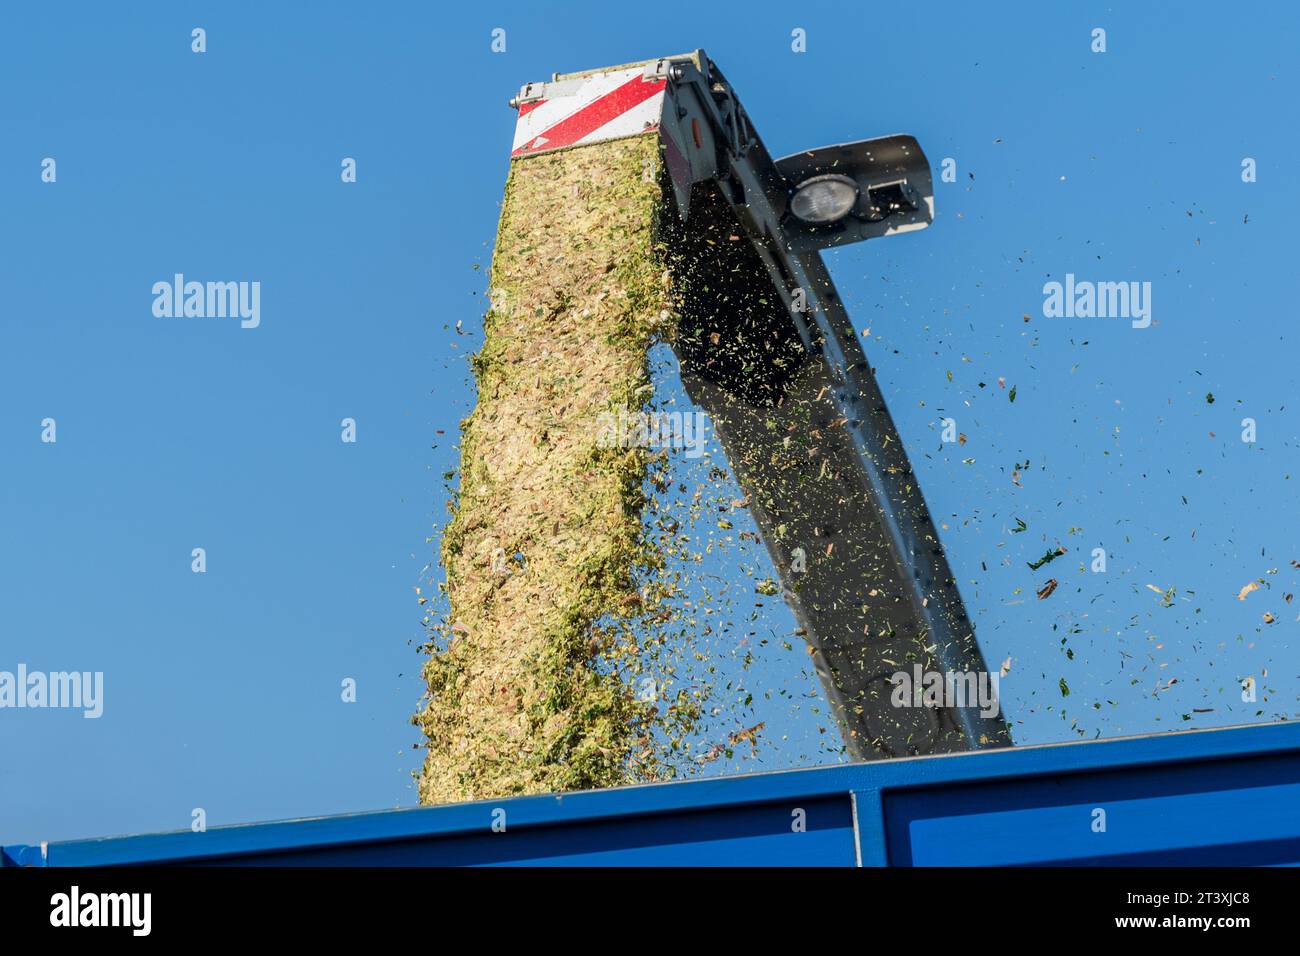 Mark Troy Agricultural Contractors, West Cork, Irlande, récolte le maïs à l'aide d'une moissonneuse-batteuse Claas Jaguar 990 pour un rendement de 25 tonnes par acre. Banque D'Images